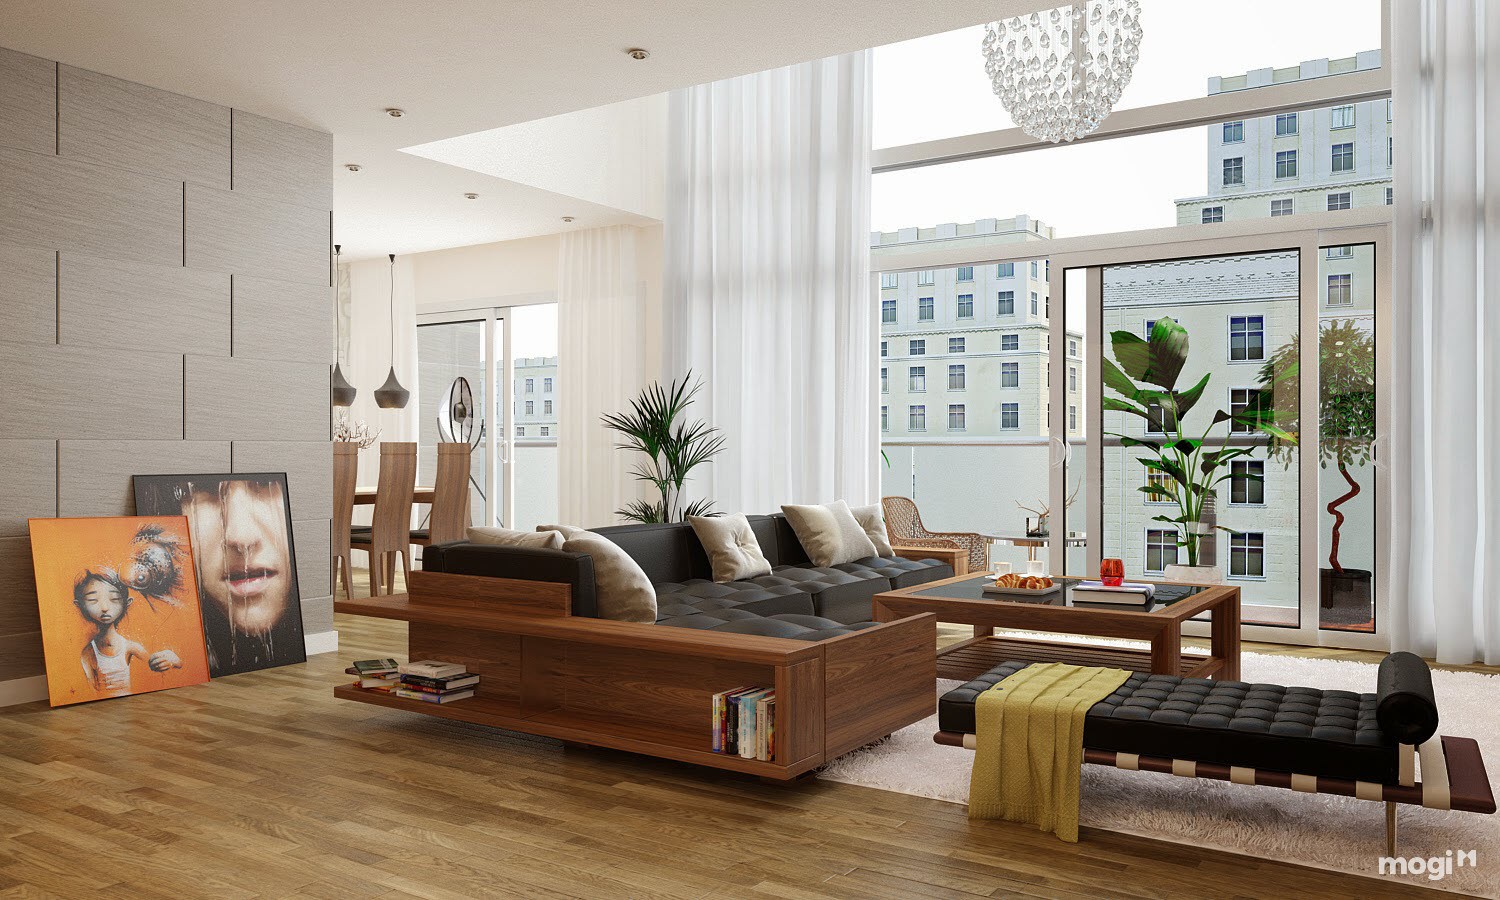 Lát sàn gỗ cho phòng khách thì nên chọn loại nào cho phù hợp?